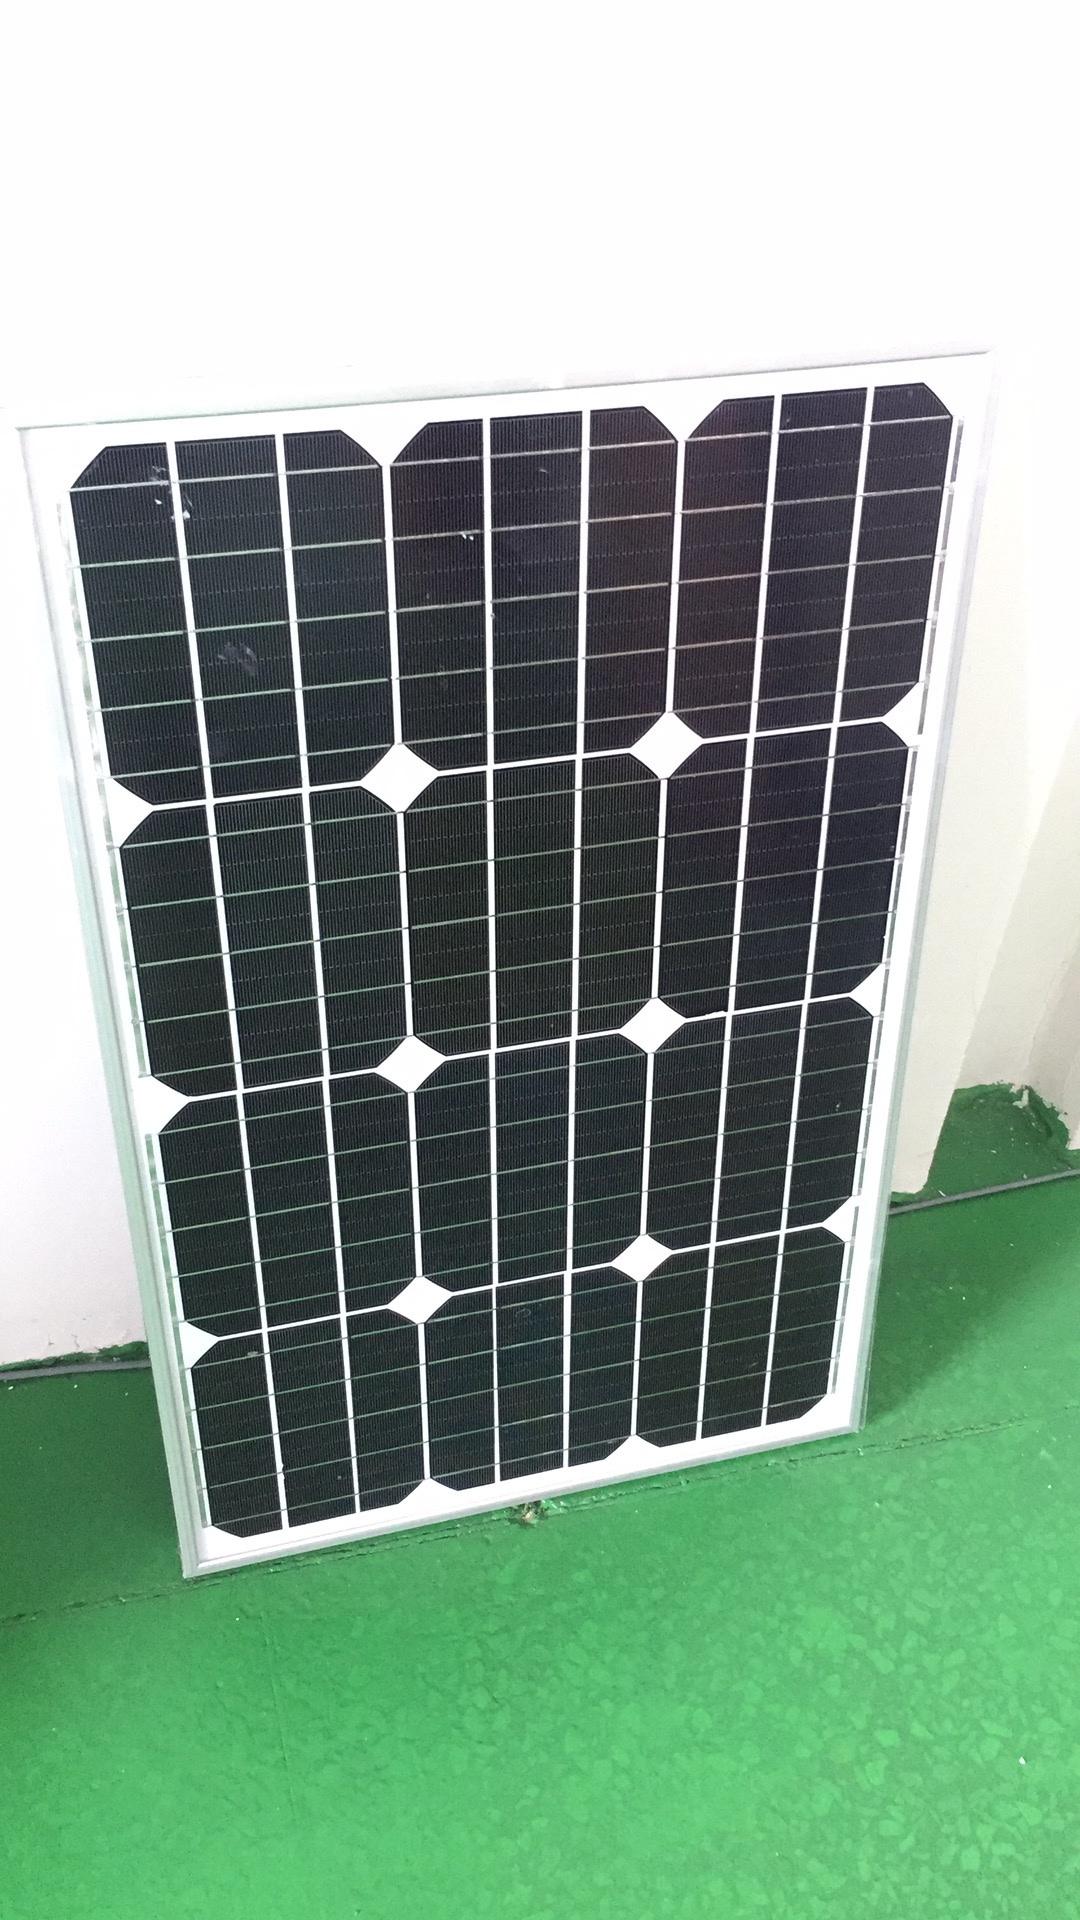 一体式路灯太阳能板 一体式路灯太阳能板直销 一体式路灯太阳能板价格 一体式路灯太阳能板厂家图片